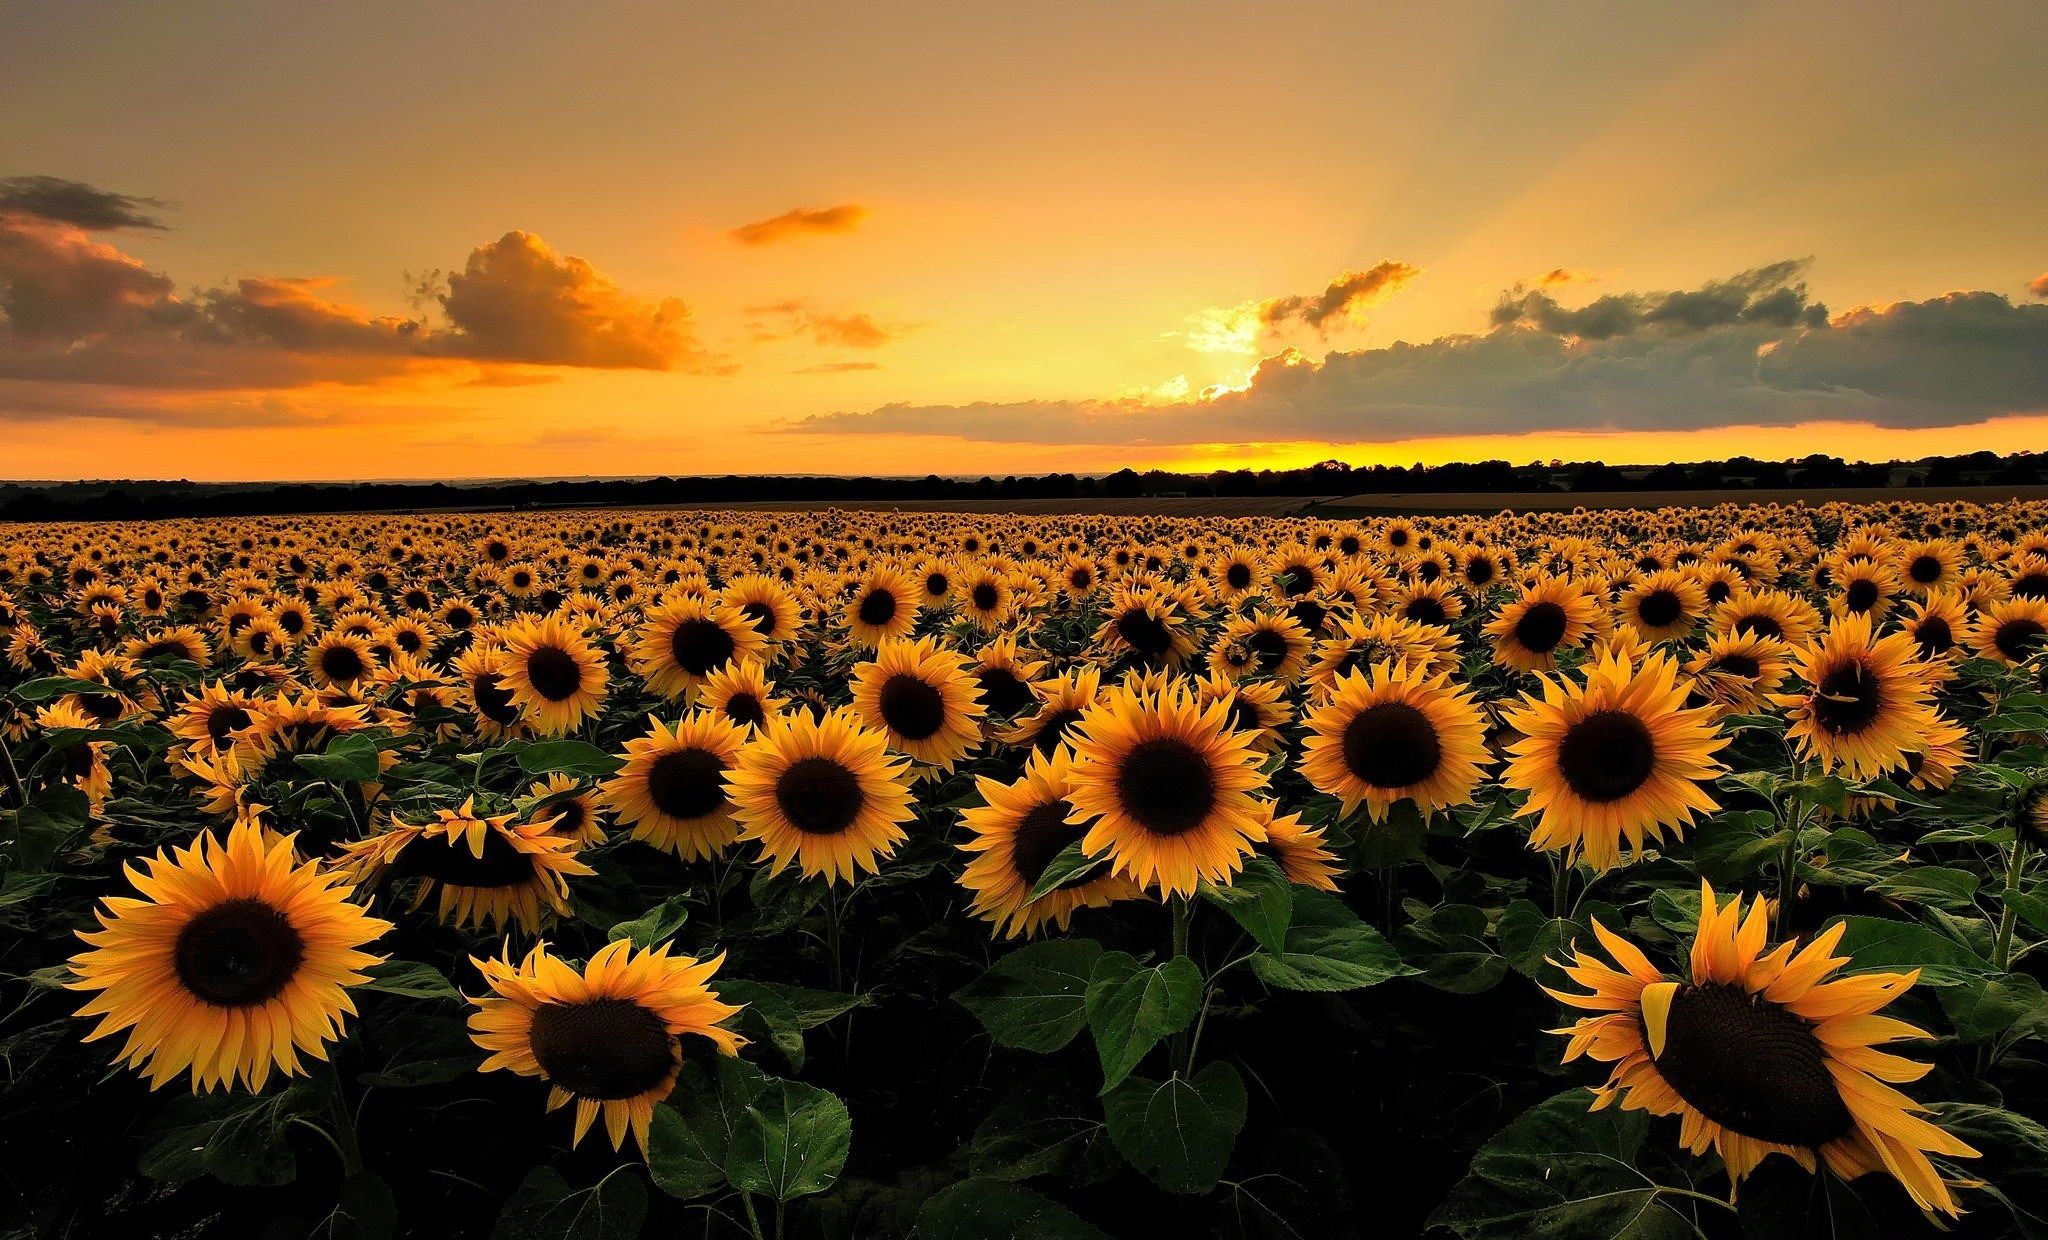 Free Desktop Wallpaper Downloads Sunflower - Sunflowers Hd , HD Wallpaper & Backgrounds